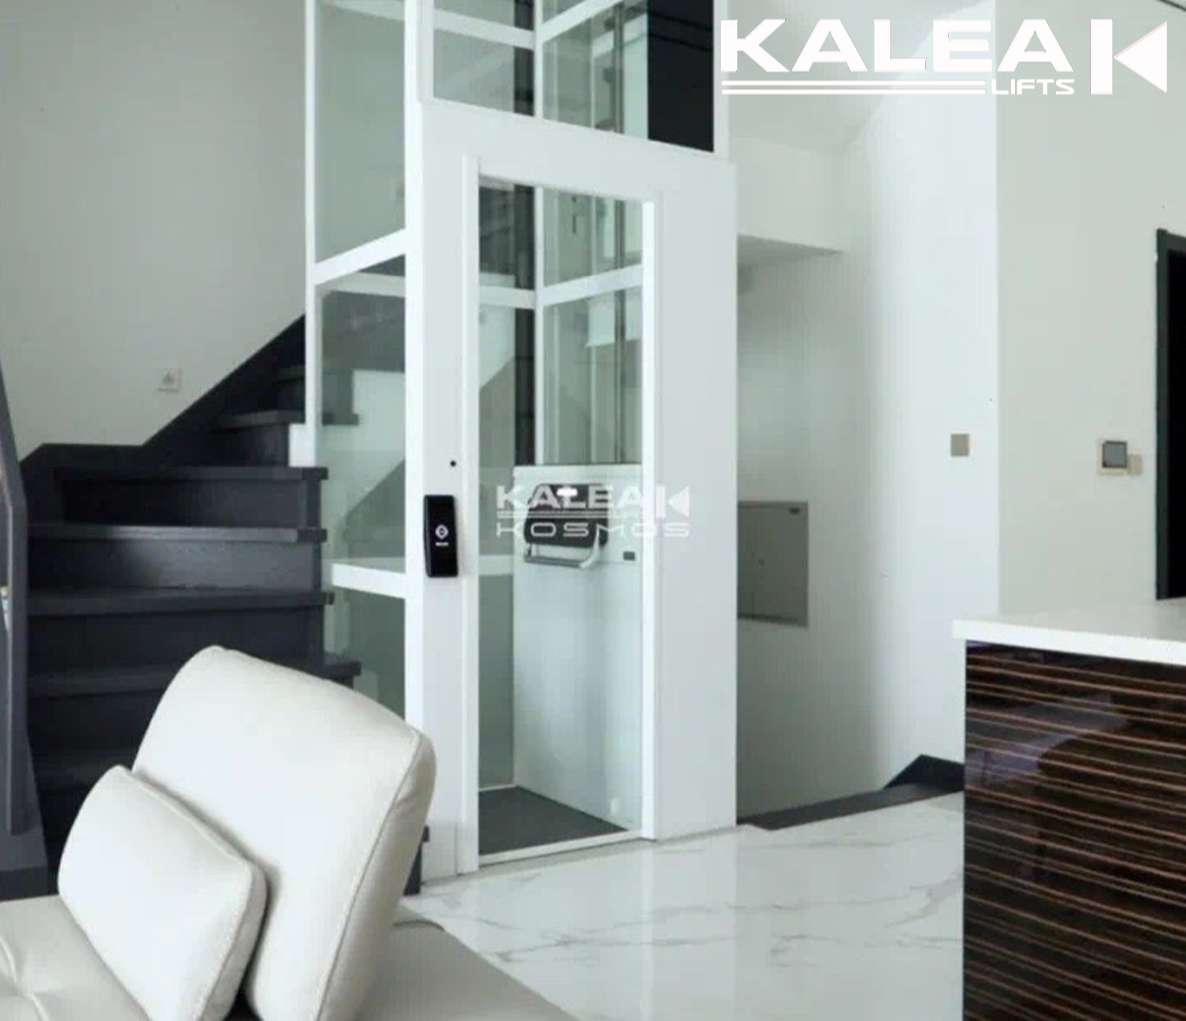 Thang máy sàn nâng Kalea Kosmos K60 kết hợp tuyệt vời với phong cách nội thất ở biệt thự sang trọng.